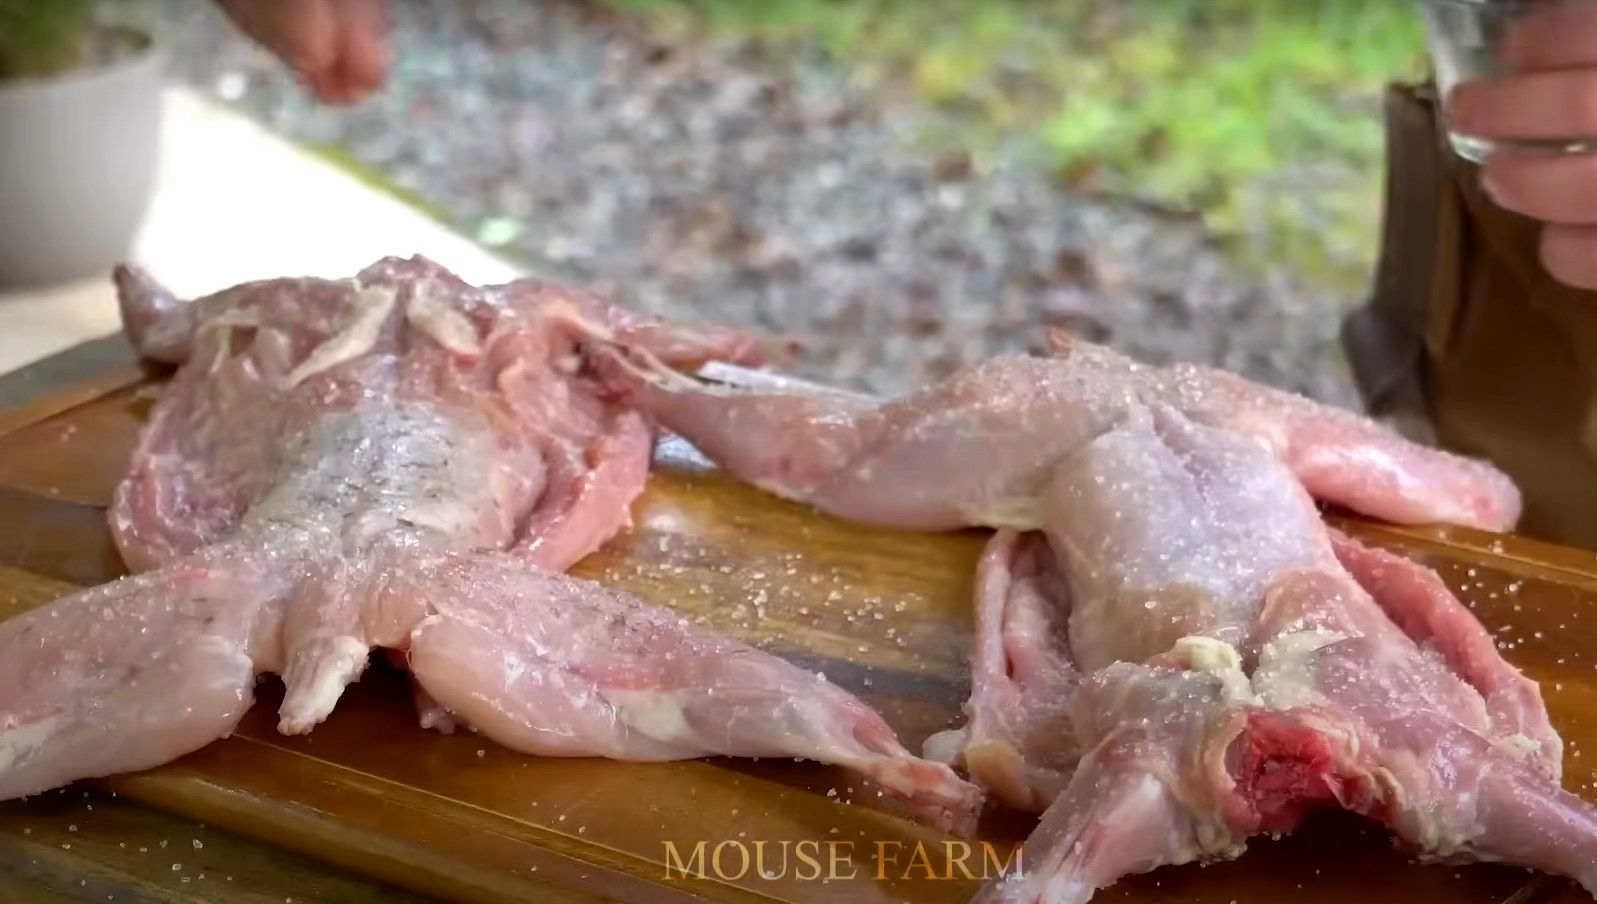 (ویدئو) کارخانه فرآوری گوشت خرگوش؛ کشاورزان چگونه هزاران خرگوش را پرورش می دهند؟